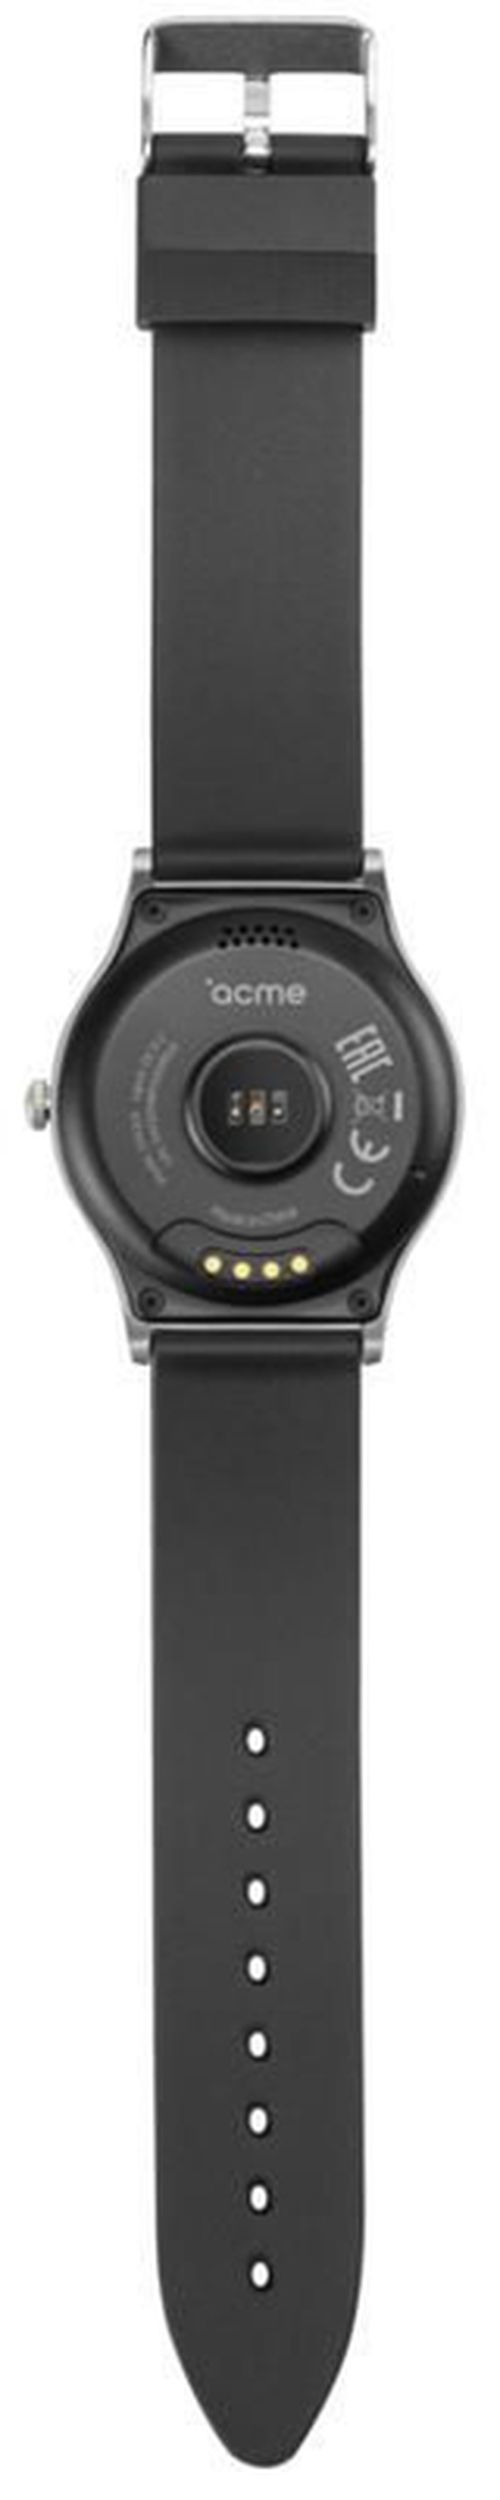 купить Смарт часы Acme SW201 в Кишинёве 